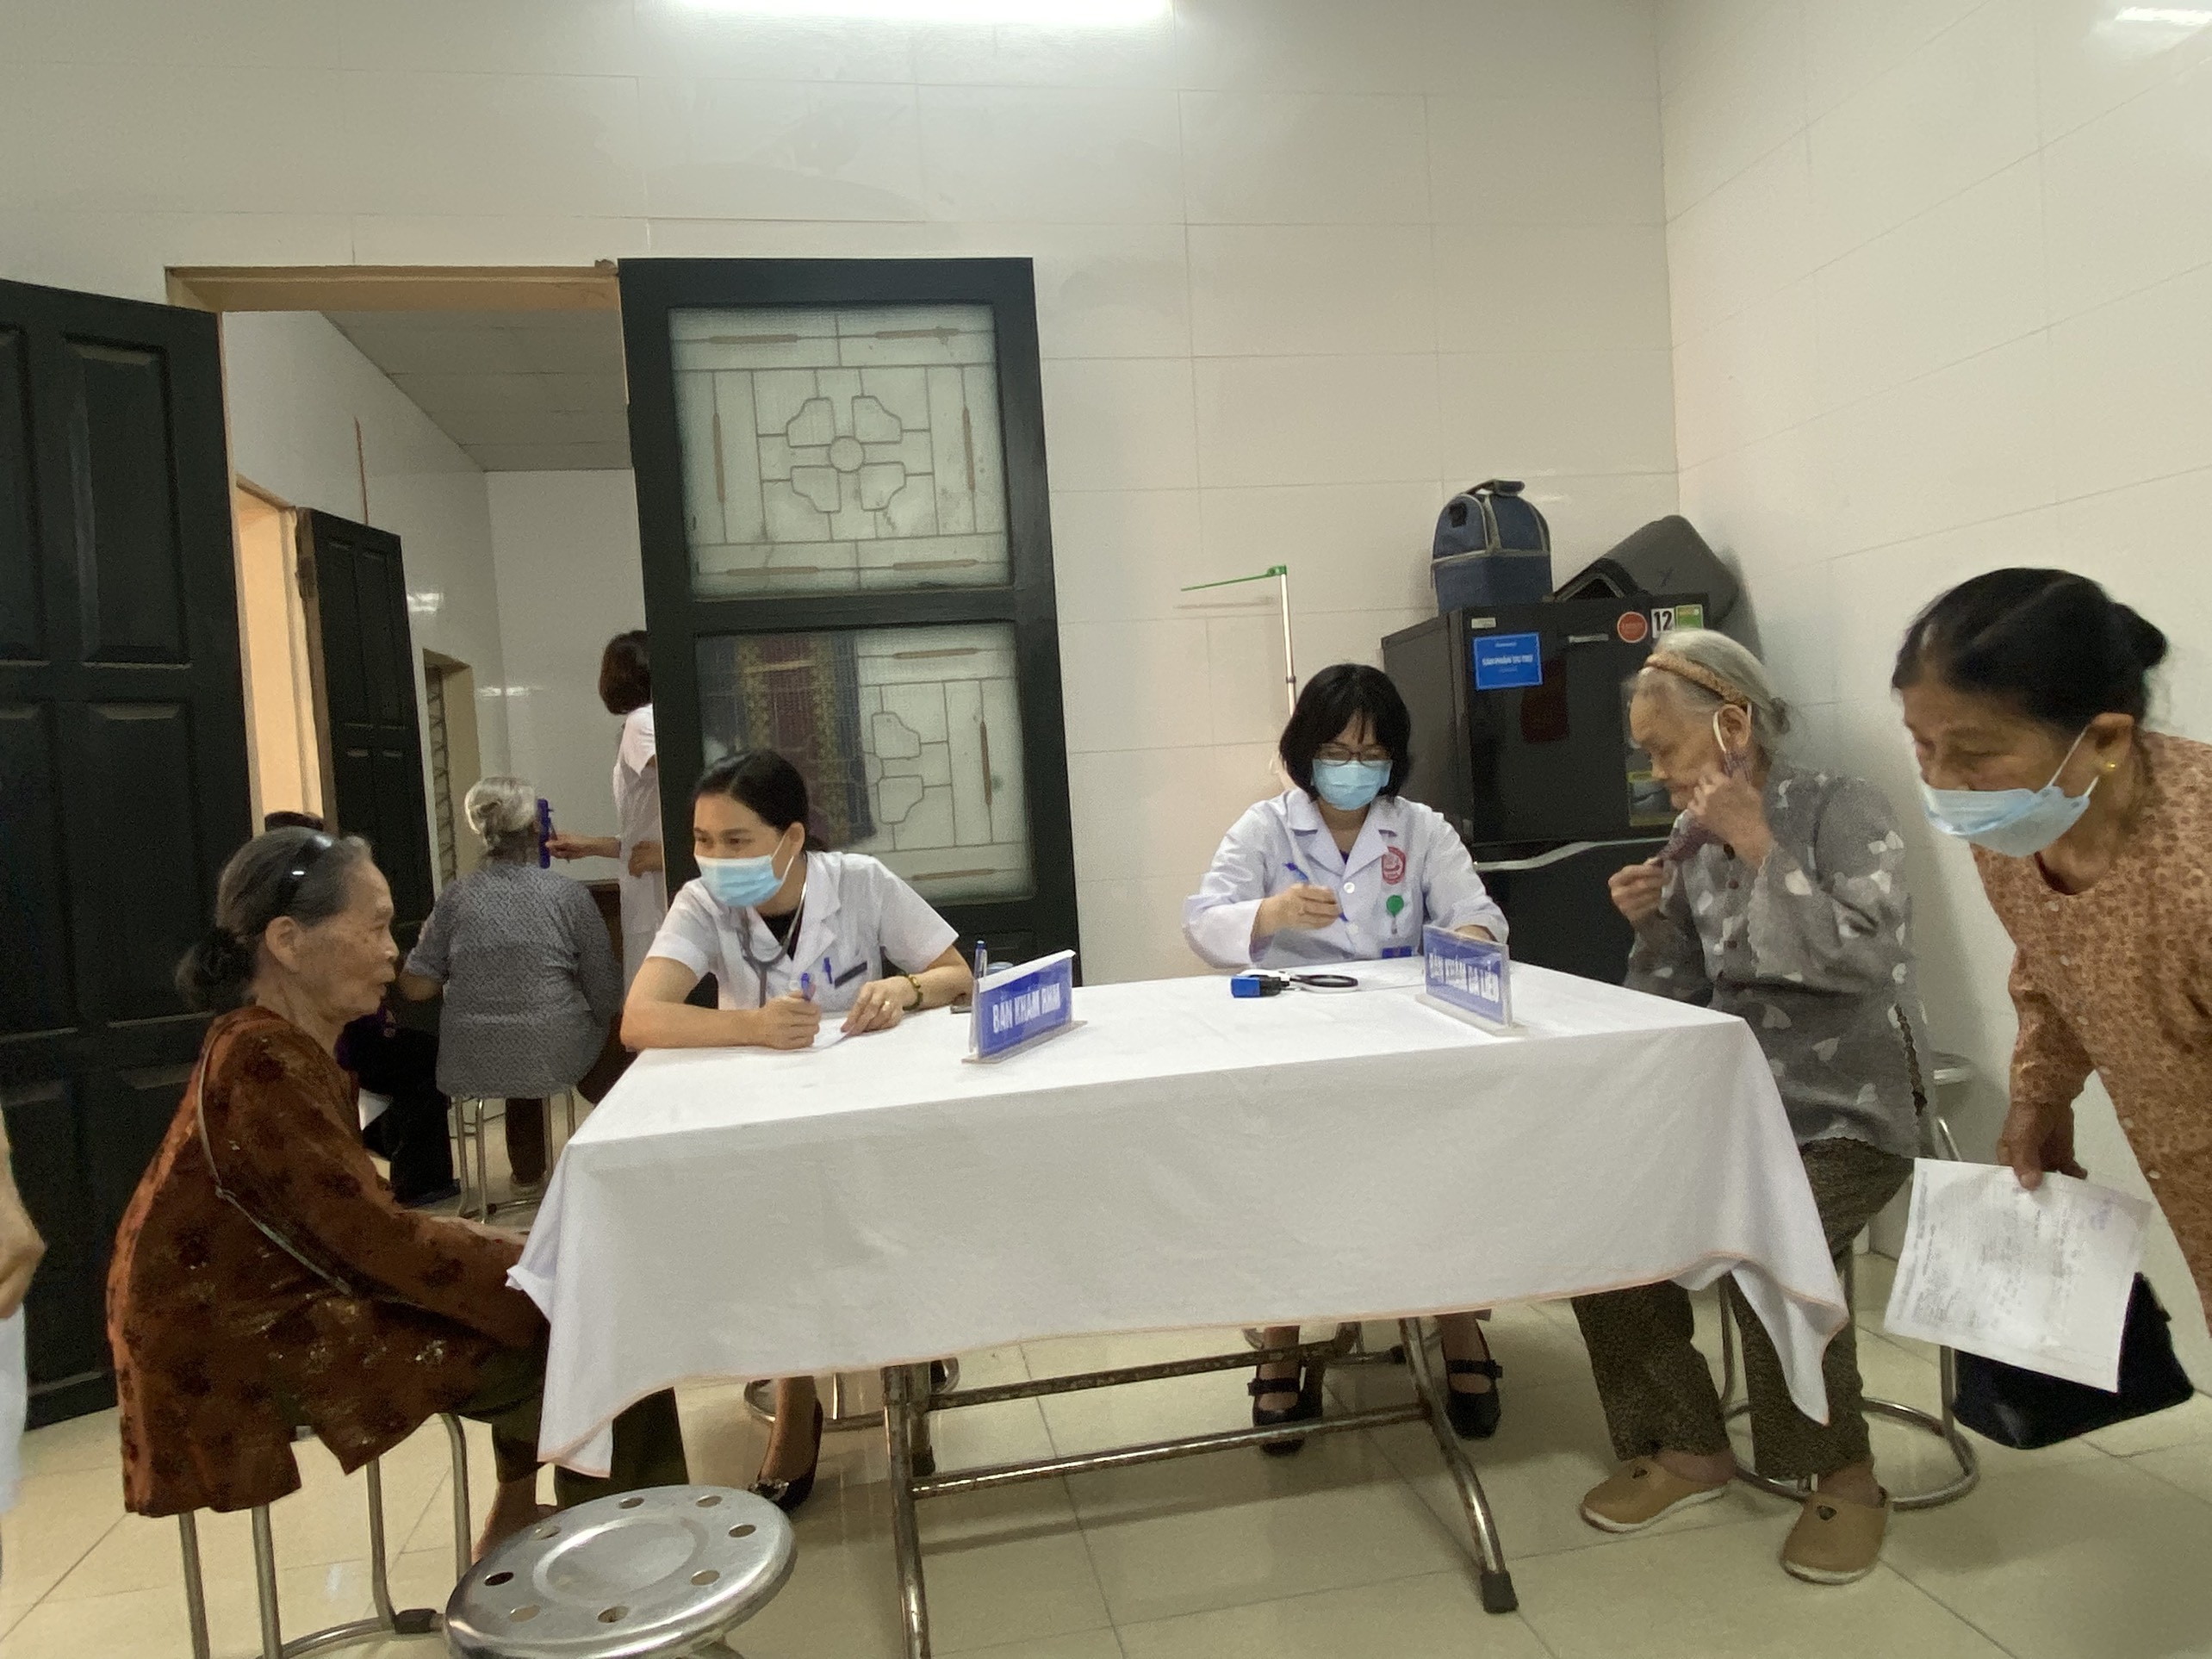 Trung tâm Kiểm soát bệnh tật: Khám bệnh miễn phí cho bệnh nhân gia đình chính sách tại phường Thọ...|https://kiemsoatbenhtatbacgiang.vn/ja_JP/chi-tiet-tin-tuc/-/asset_publisher/M0UUAFstbTMq/content/trung-tam-kiem-soat-benh-tat-kham-benh-mien-phi-cho-benh-nhan-gia-inh-chinh-sach-tai-phuong-tho-xuong